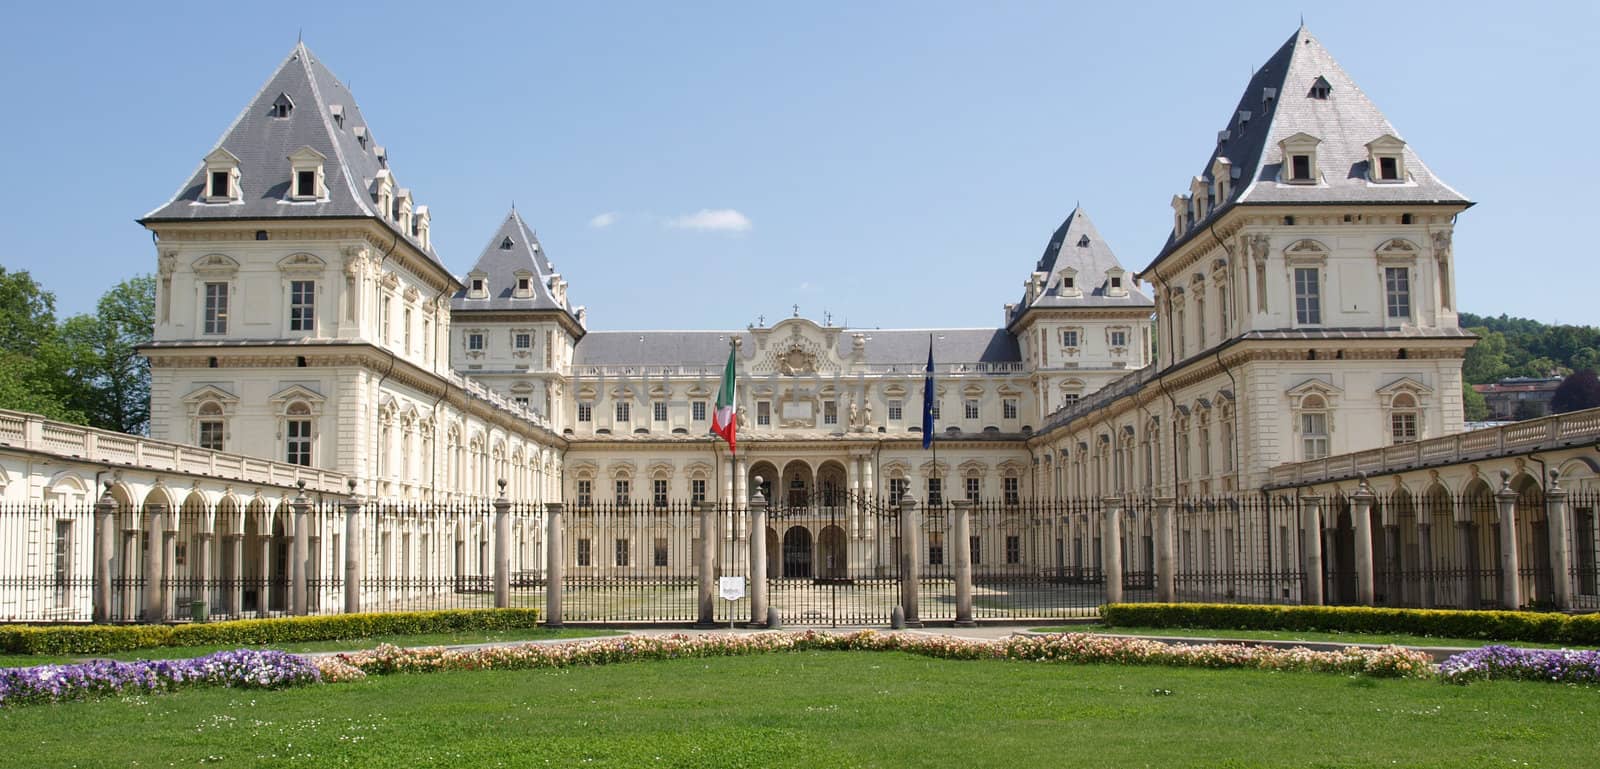 Castello Del Valentino in Turin (Torino), Italy